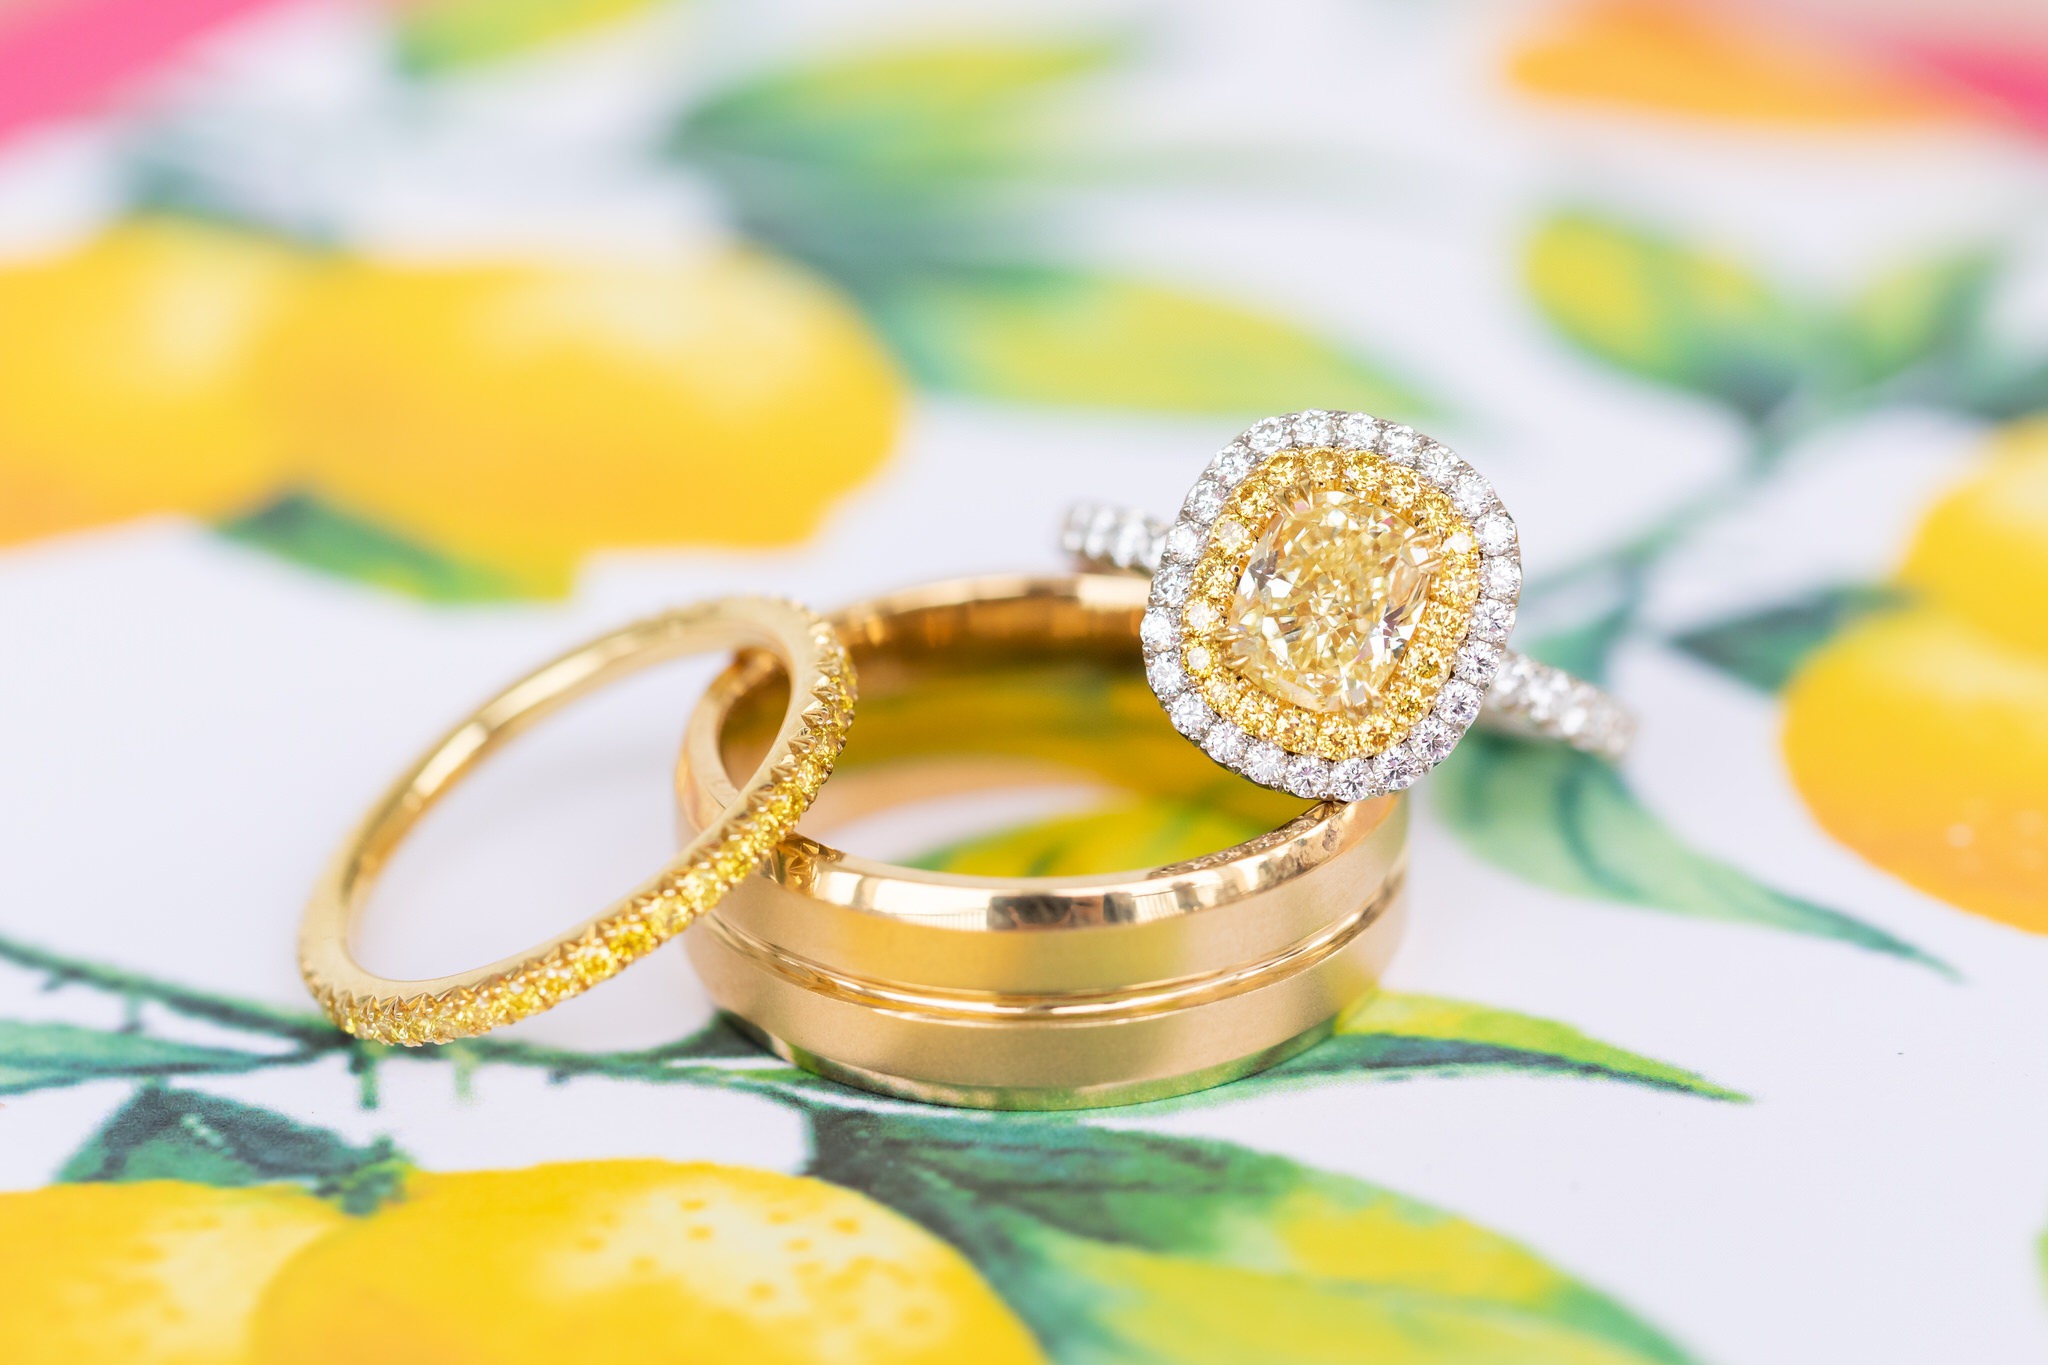 A Fuchsia & Lemon Inspired Wedding Styled Shoot at Kendall Plantation by Dawn Elizabeth Studios, Boerne Wedding Photographer